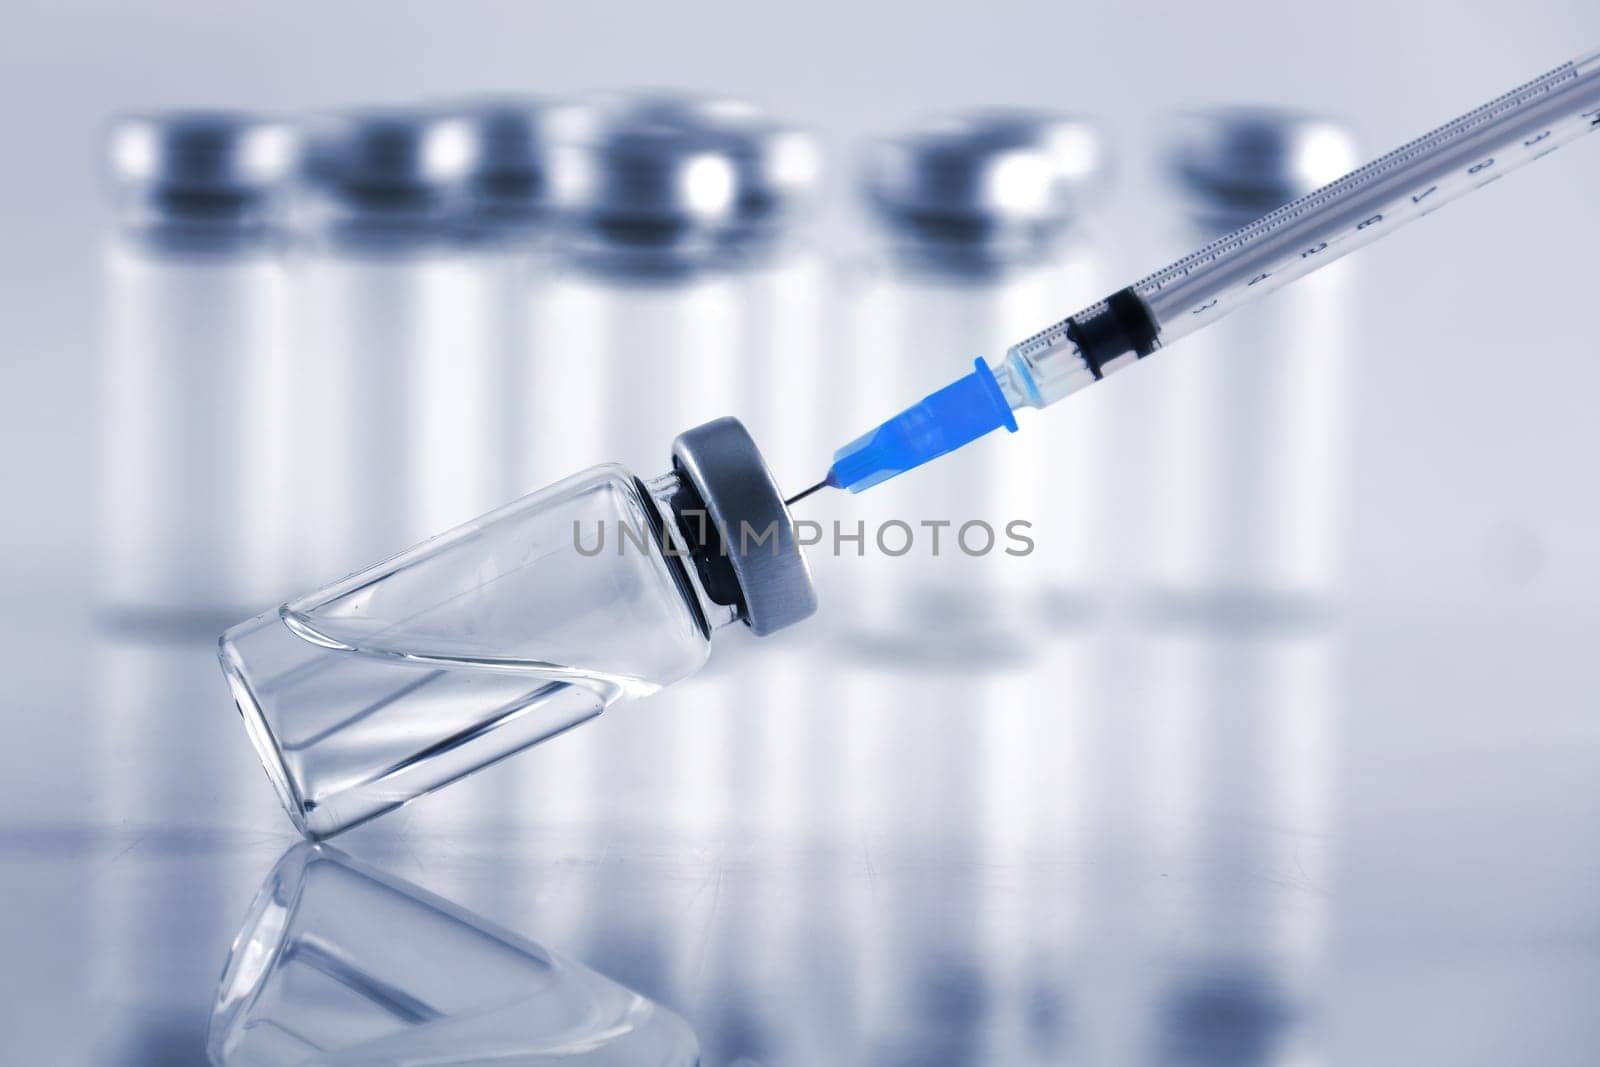 A medical syringe and vaccine ampule bottles